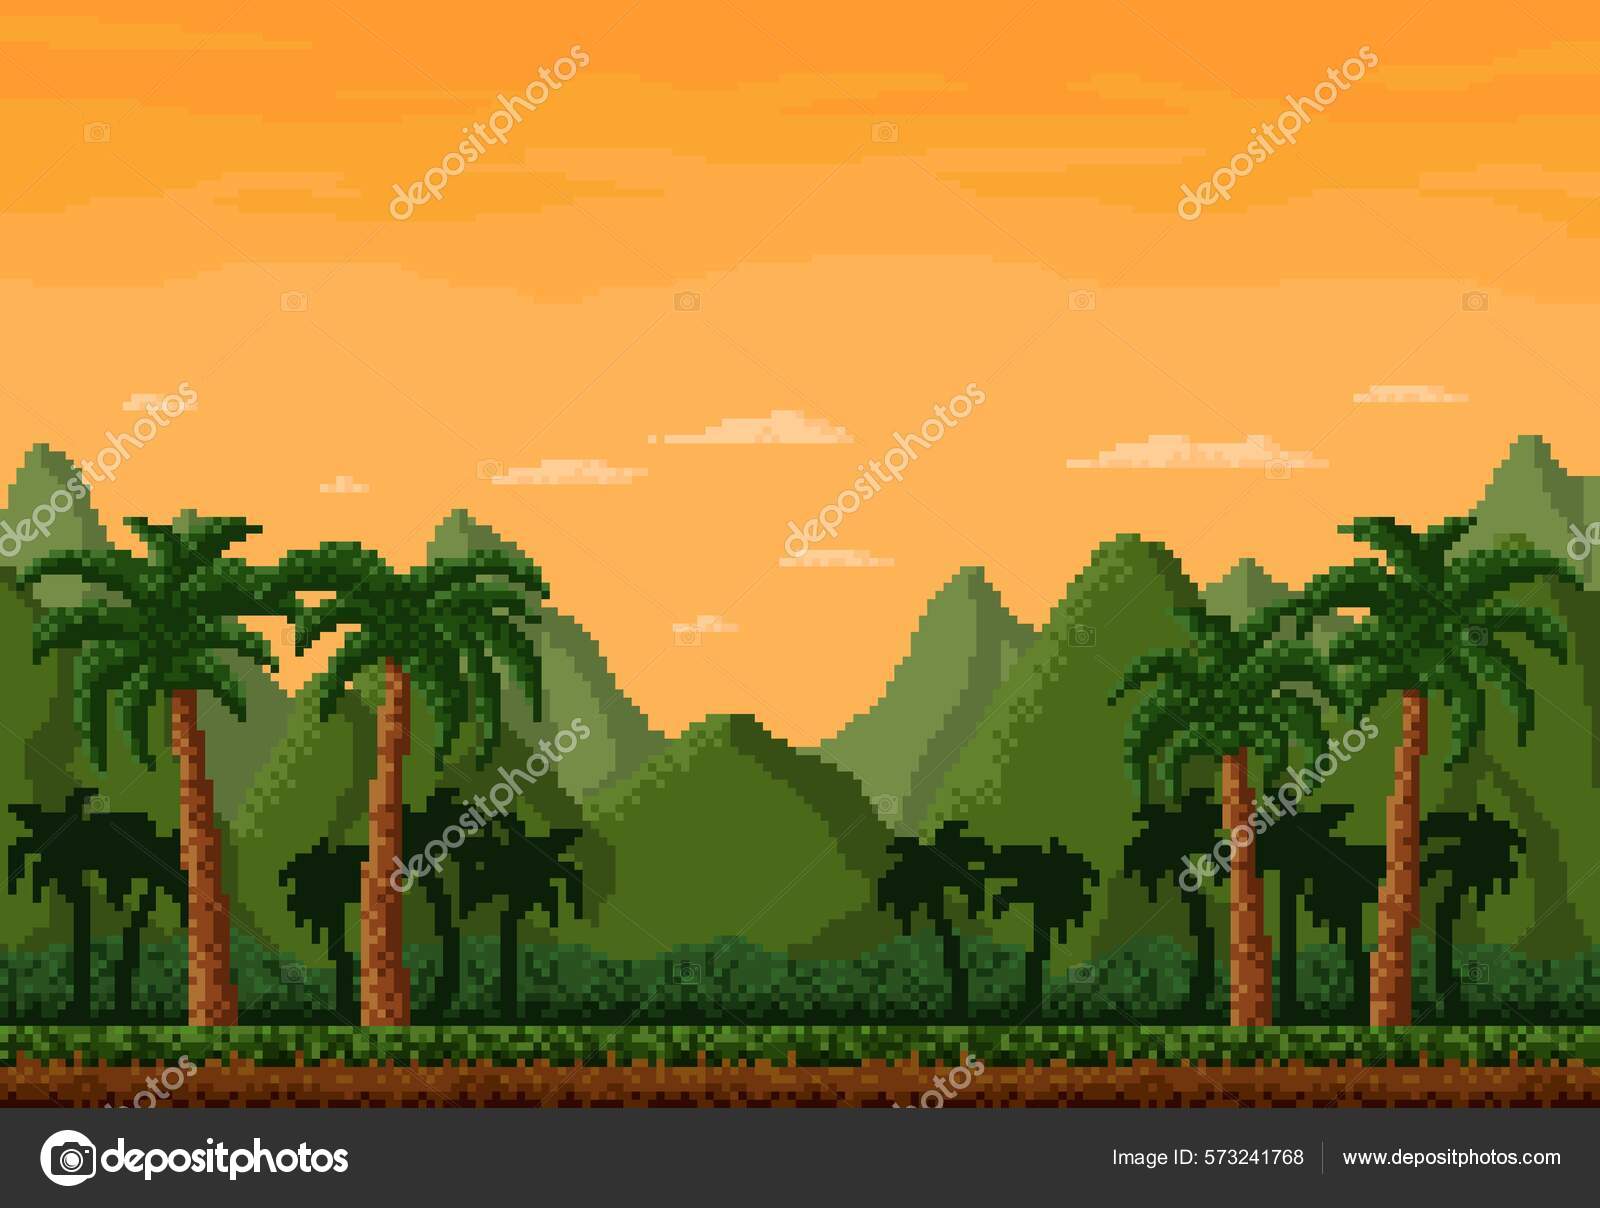 Paisagem de nível de jogo de pixel de 8 bits da floresta da selva